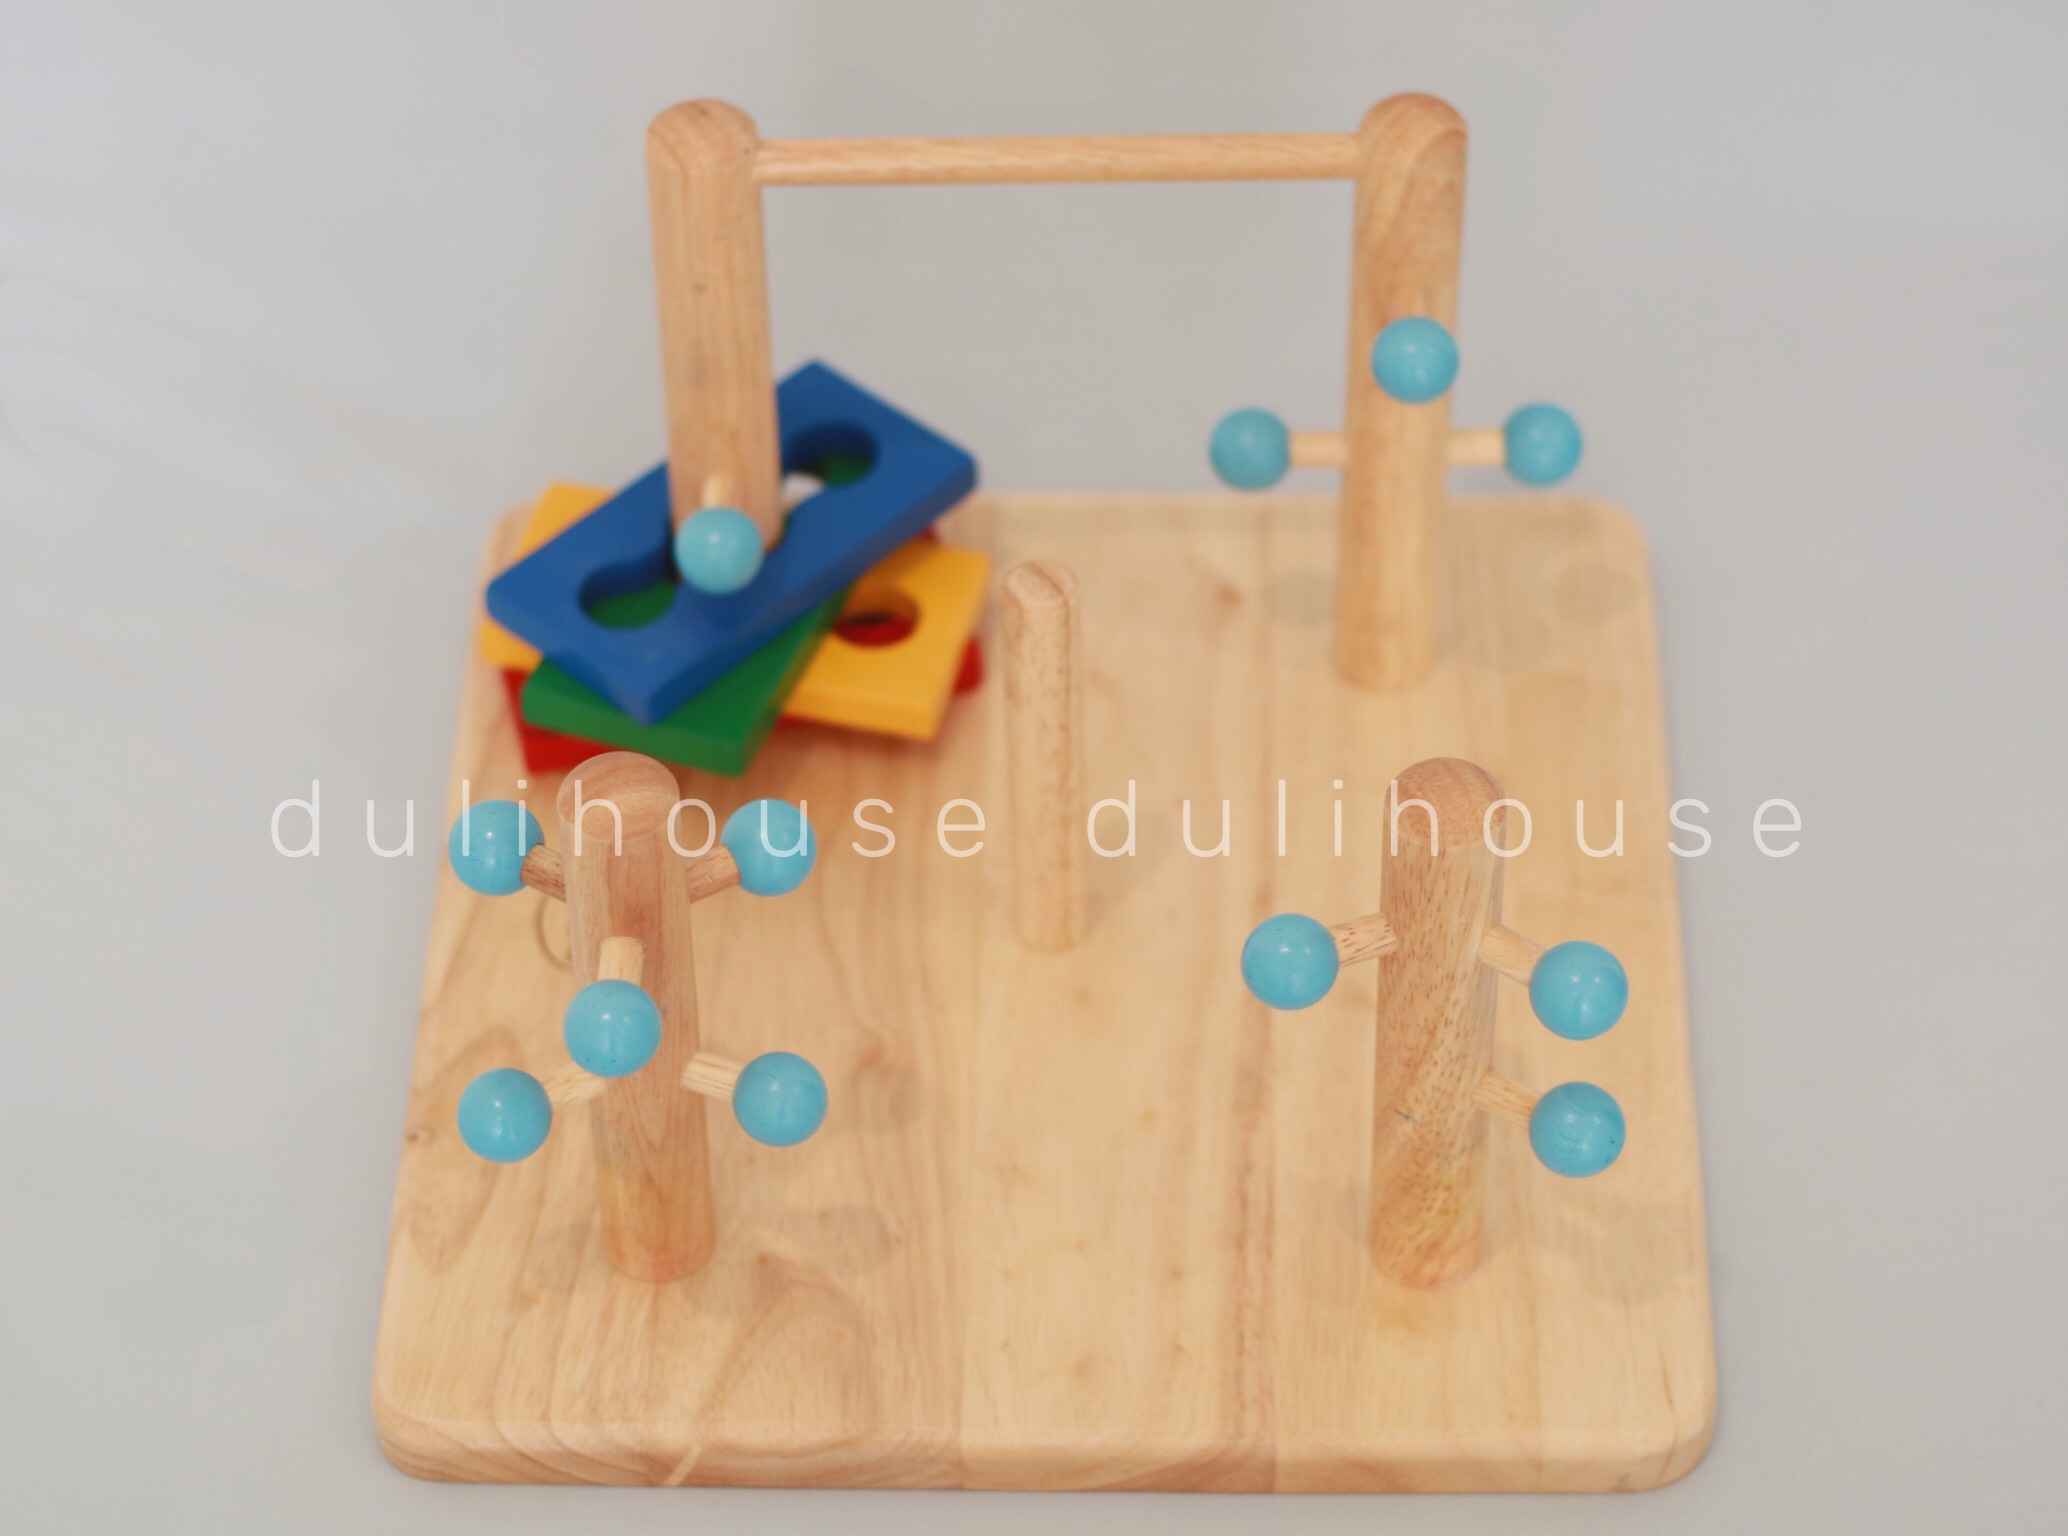 Đồ chơi gỗ phát triển vận động và tư duy - Đường luồn lý thú & Hề tháp đa năng 7 màu cho Bé - Gỗ tự nhiên an toàn